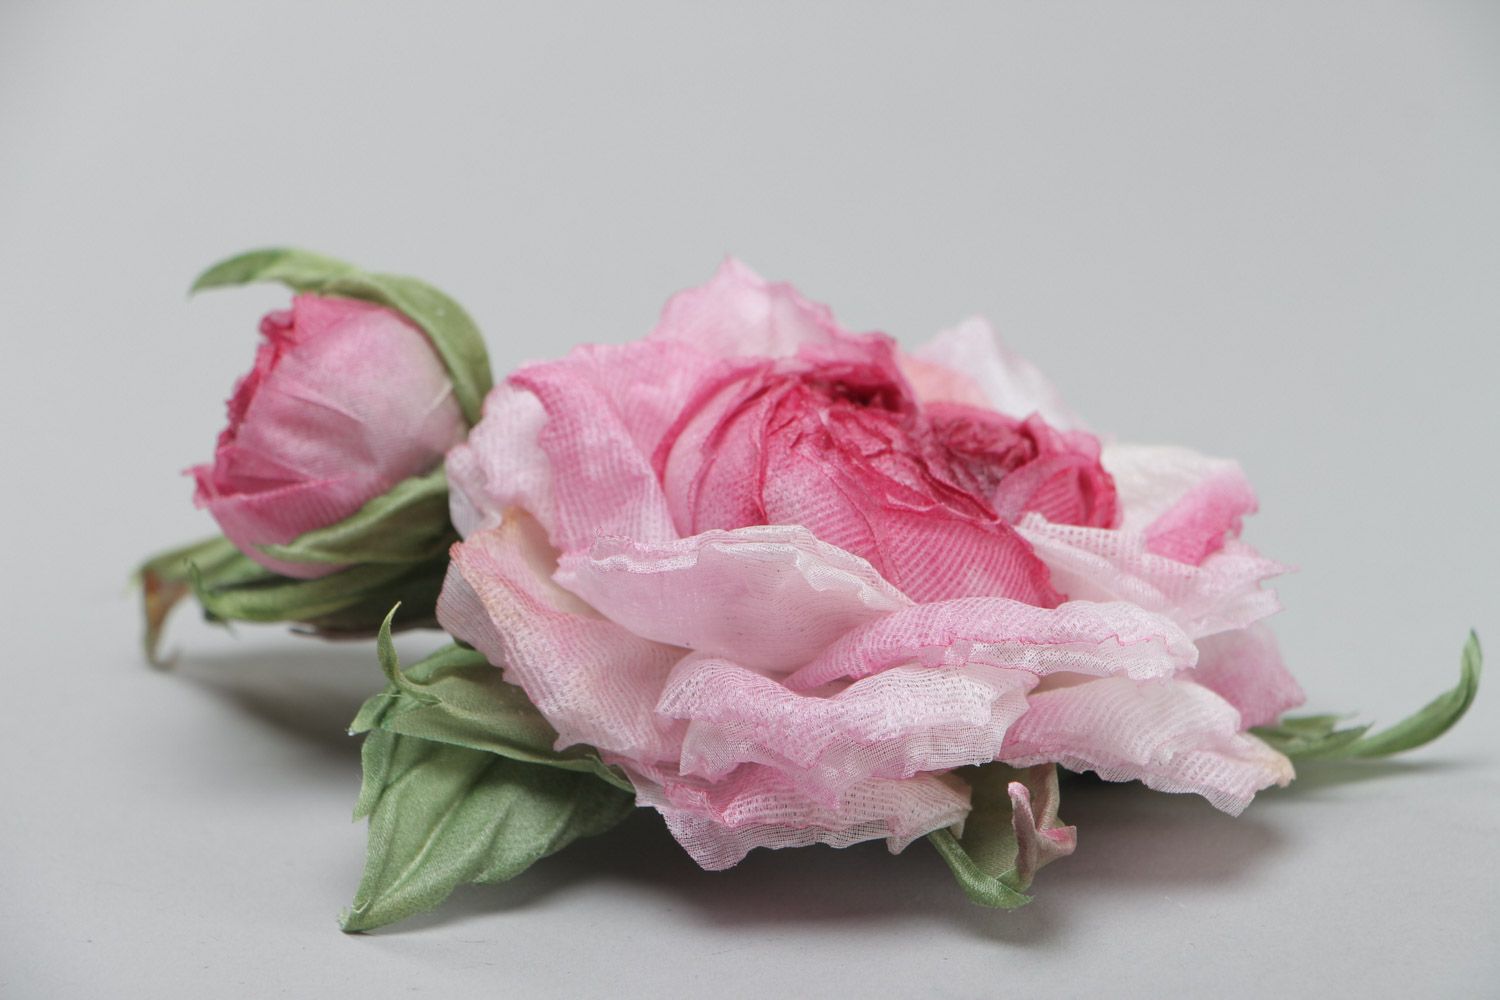 Брошь в виде розы крупная розовая нежная красивая стильная изящная ручной работы фото 3